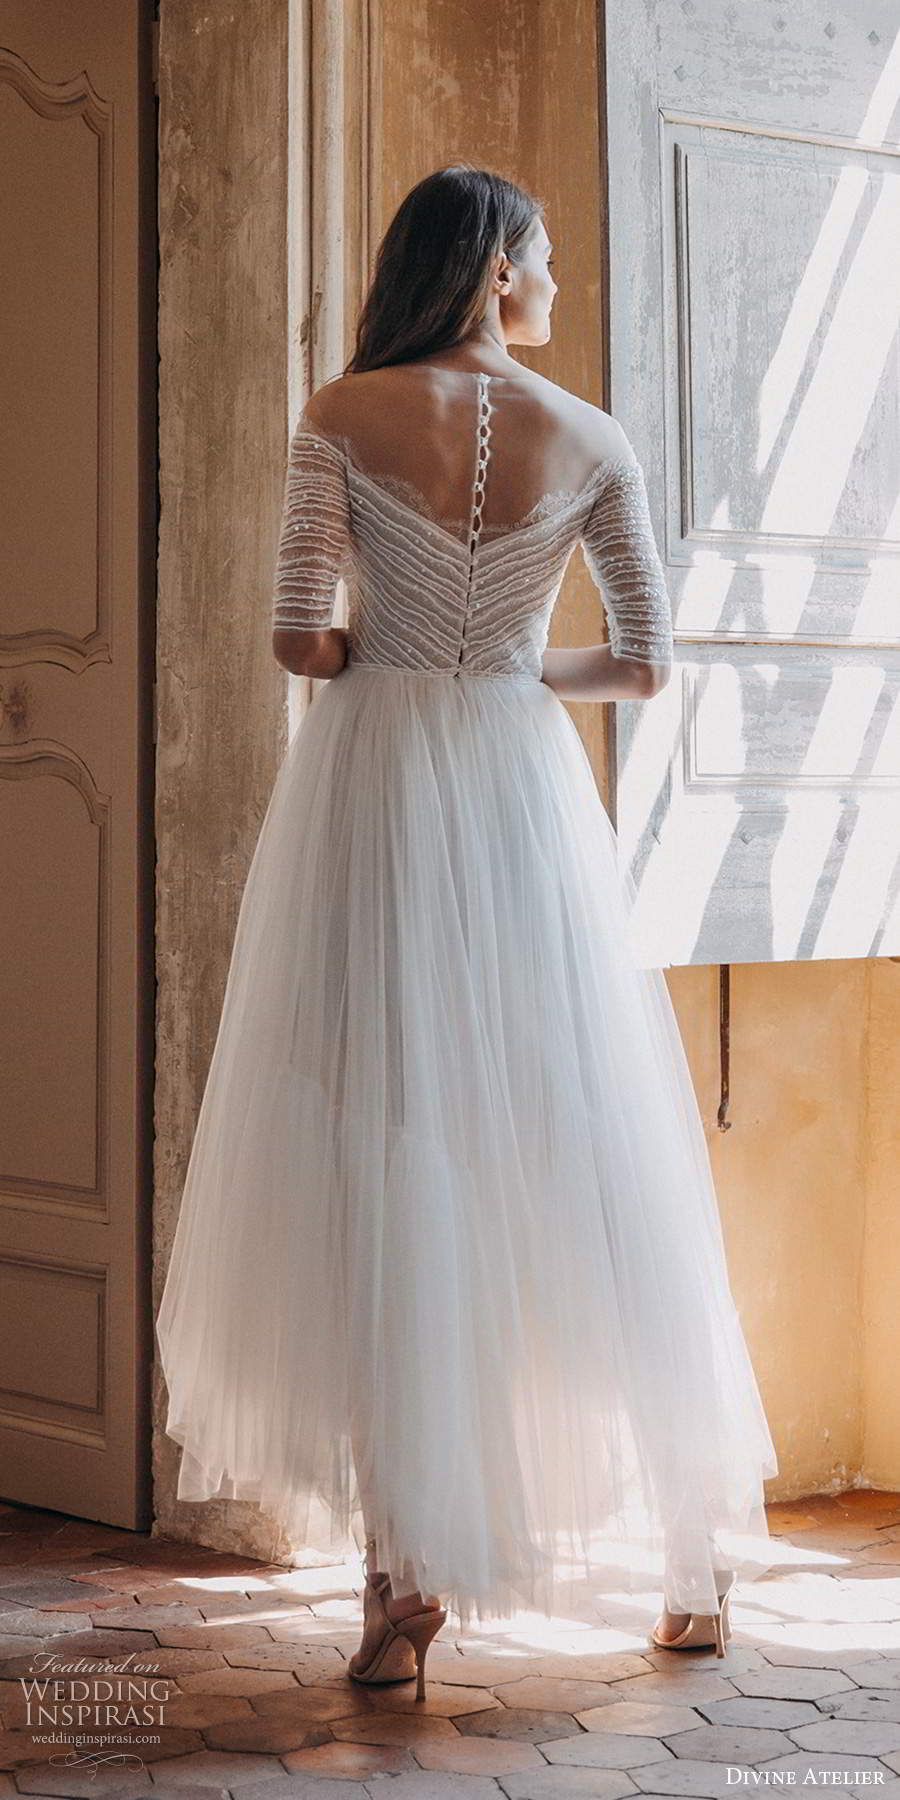 Divine Atelier 2020 Wedding Dresses -   16 dress Wedding neckline ideas